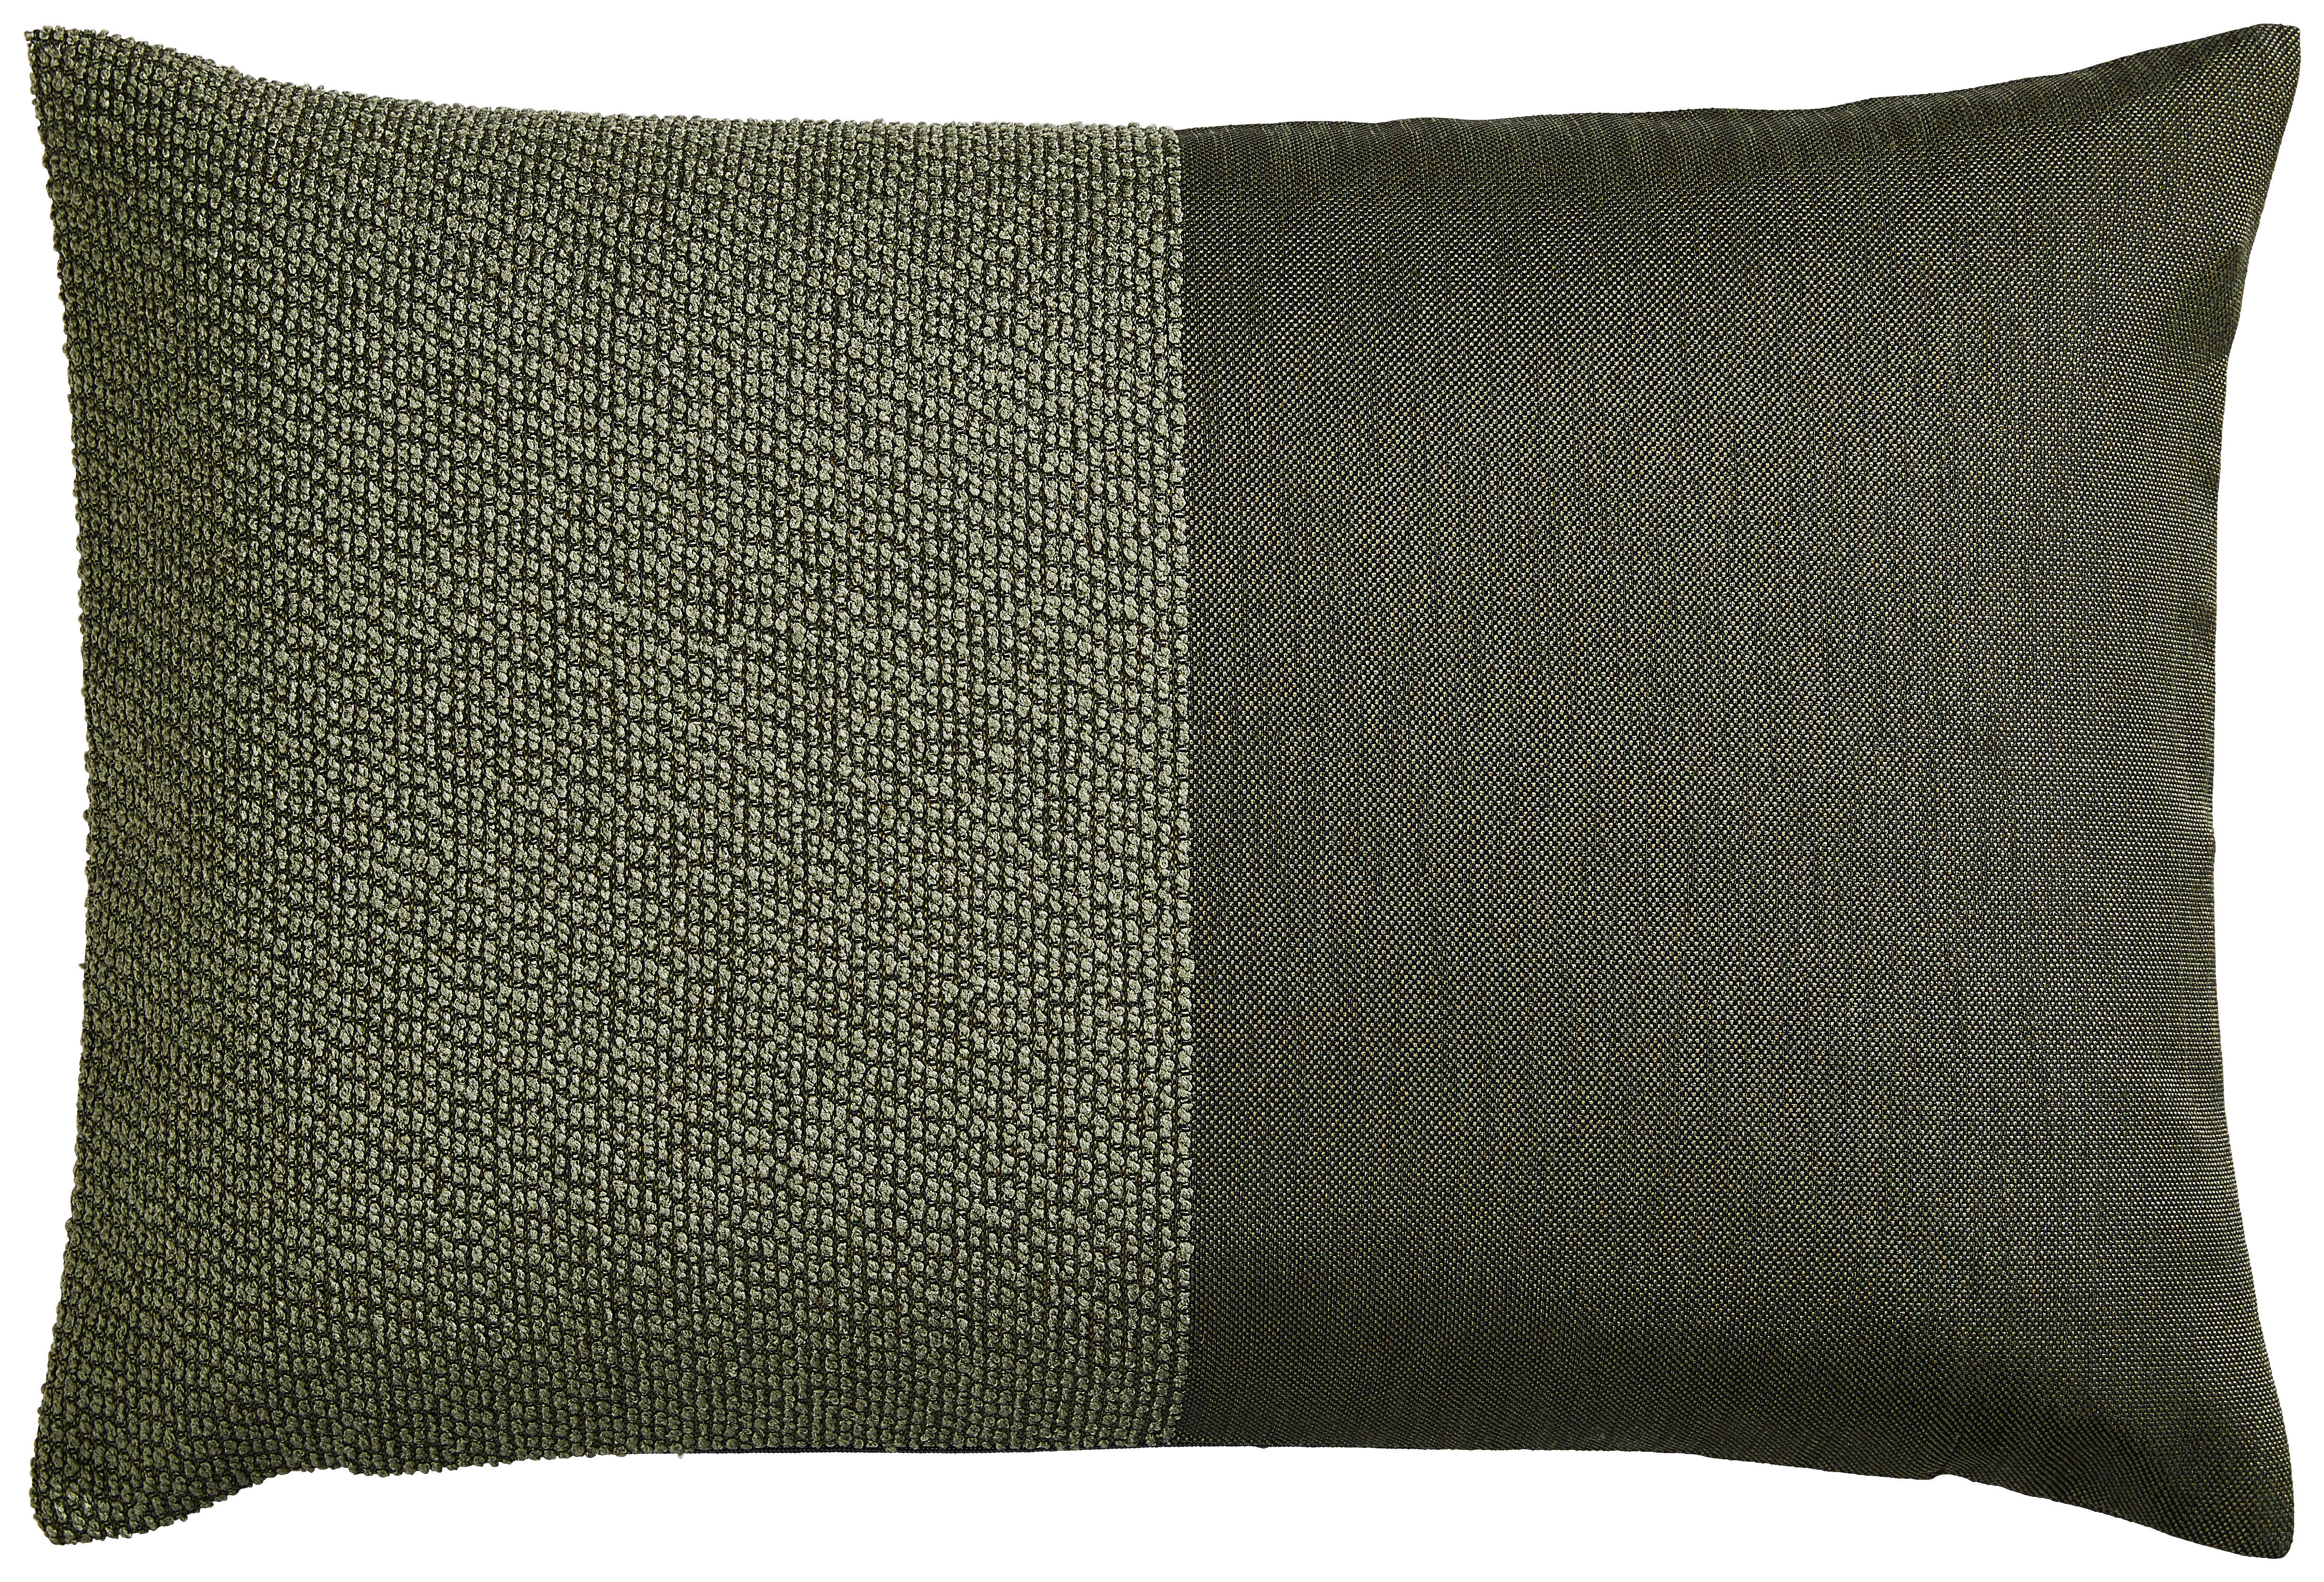 KISSENHÜLLE DUKE 40/60 cm  - Dunkelgrün, Basics, Textil (40/60cm) - Dieter Knoll